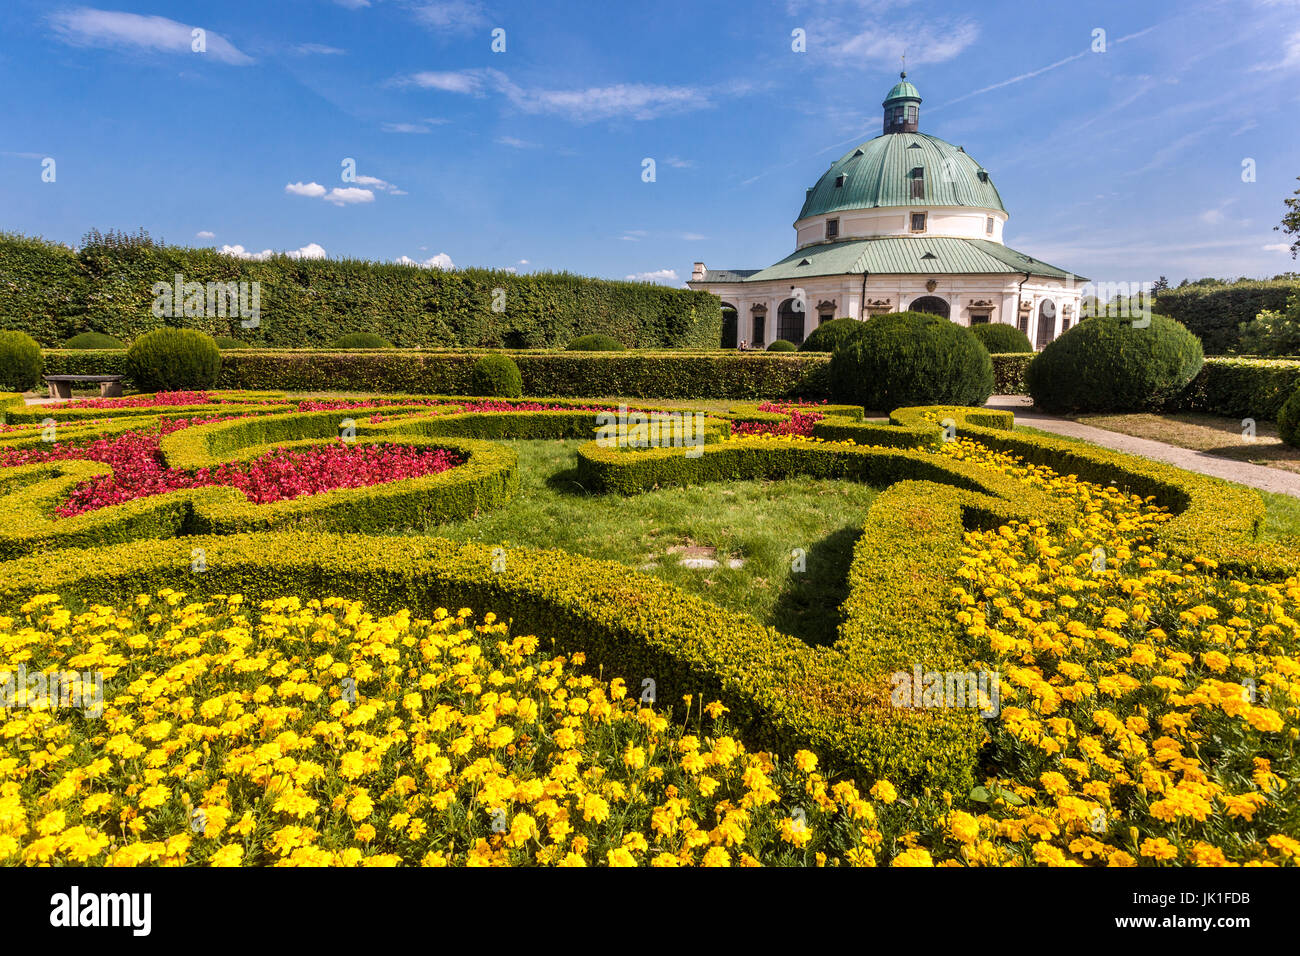 Giardino di Kromeriz, Rotunda in Pleasure Giardino Unesco barocco giardino Repubblica Ceca bei giardini barocchi Foto Stock